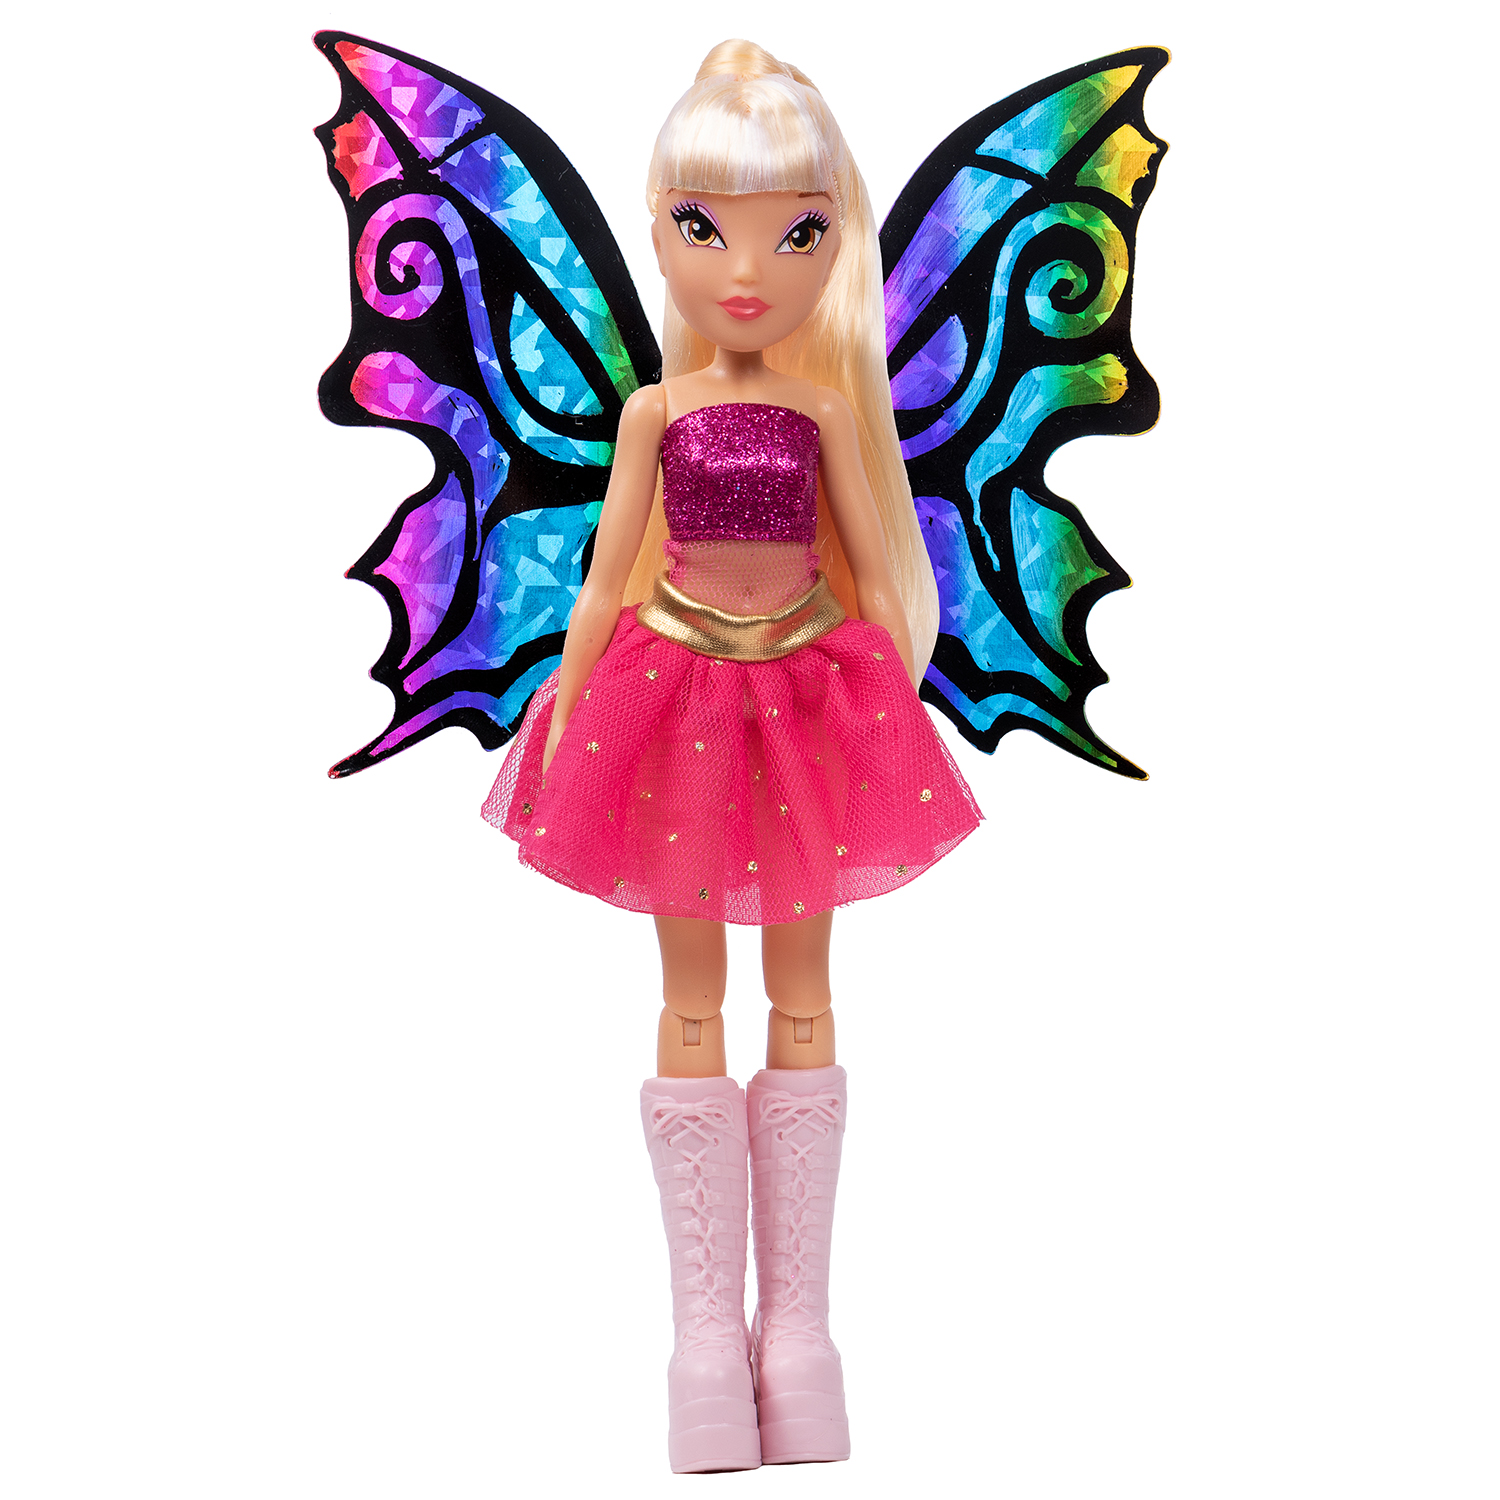 Кукла WINX Club шарнирная BTW Scratch Art Wings Стелла с крыльями для скретчинга, 24 см кукла шарнирная winx club модная блум с крыльями 24 см iw01242101